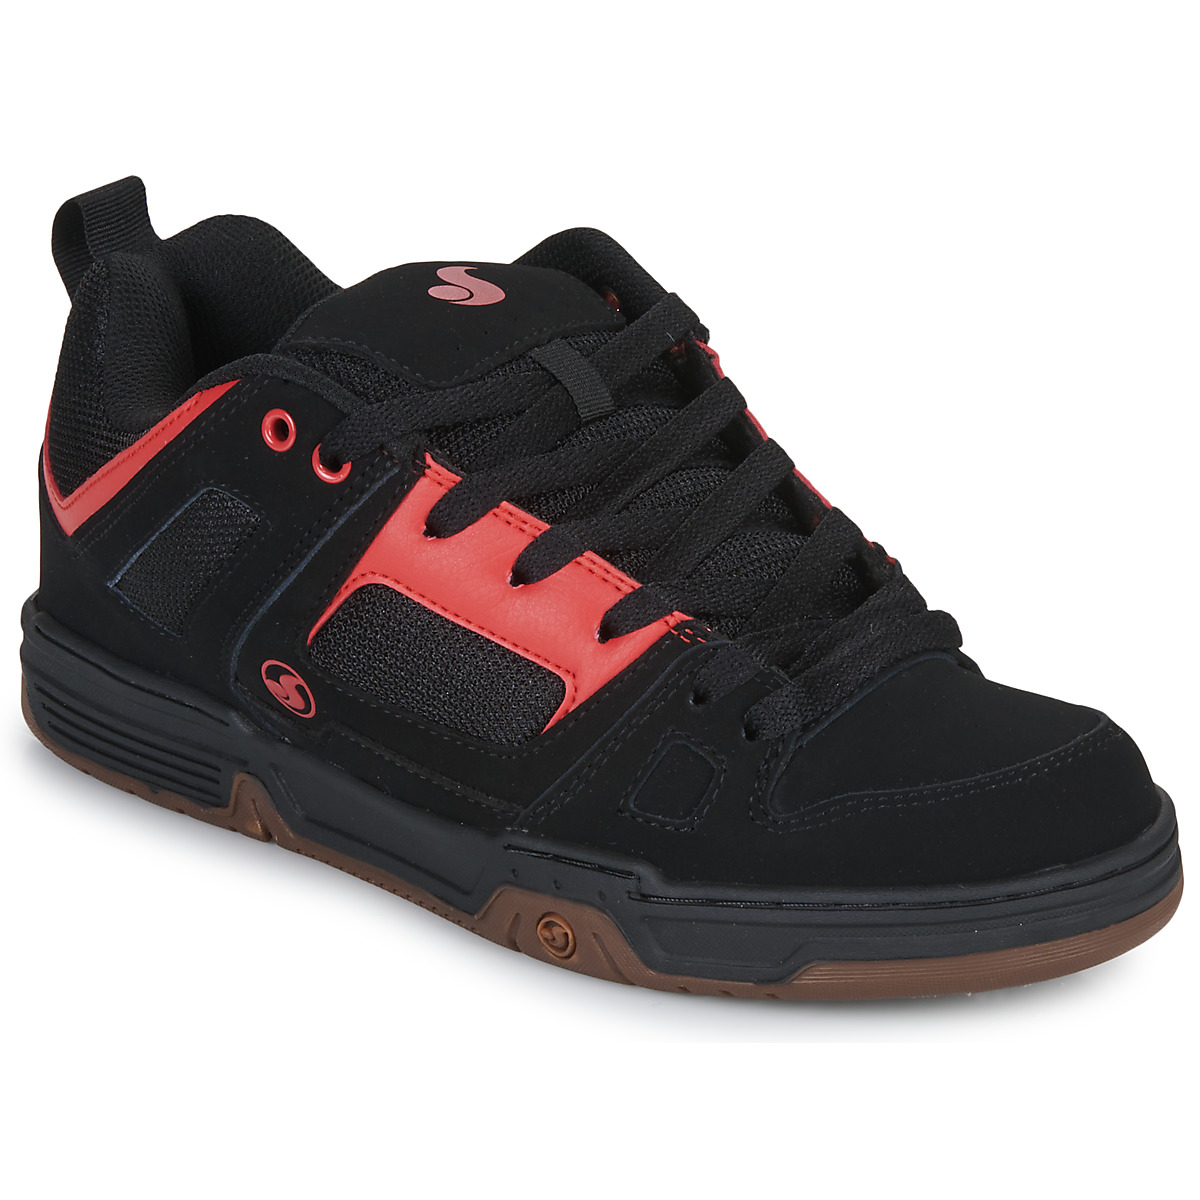 Pantofi Bărbați Pantofi sport Casual DVS GAMBOL Negru / Roșu